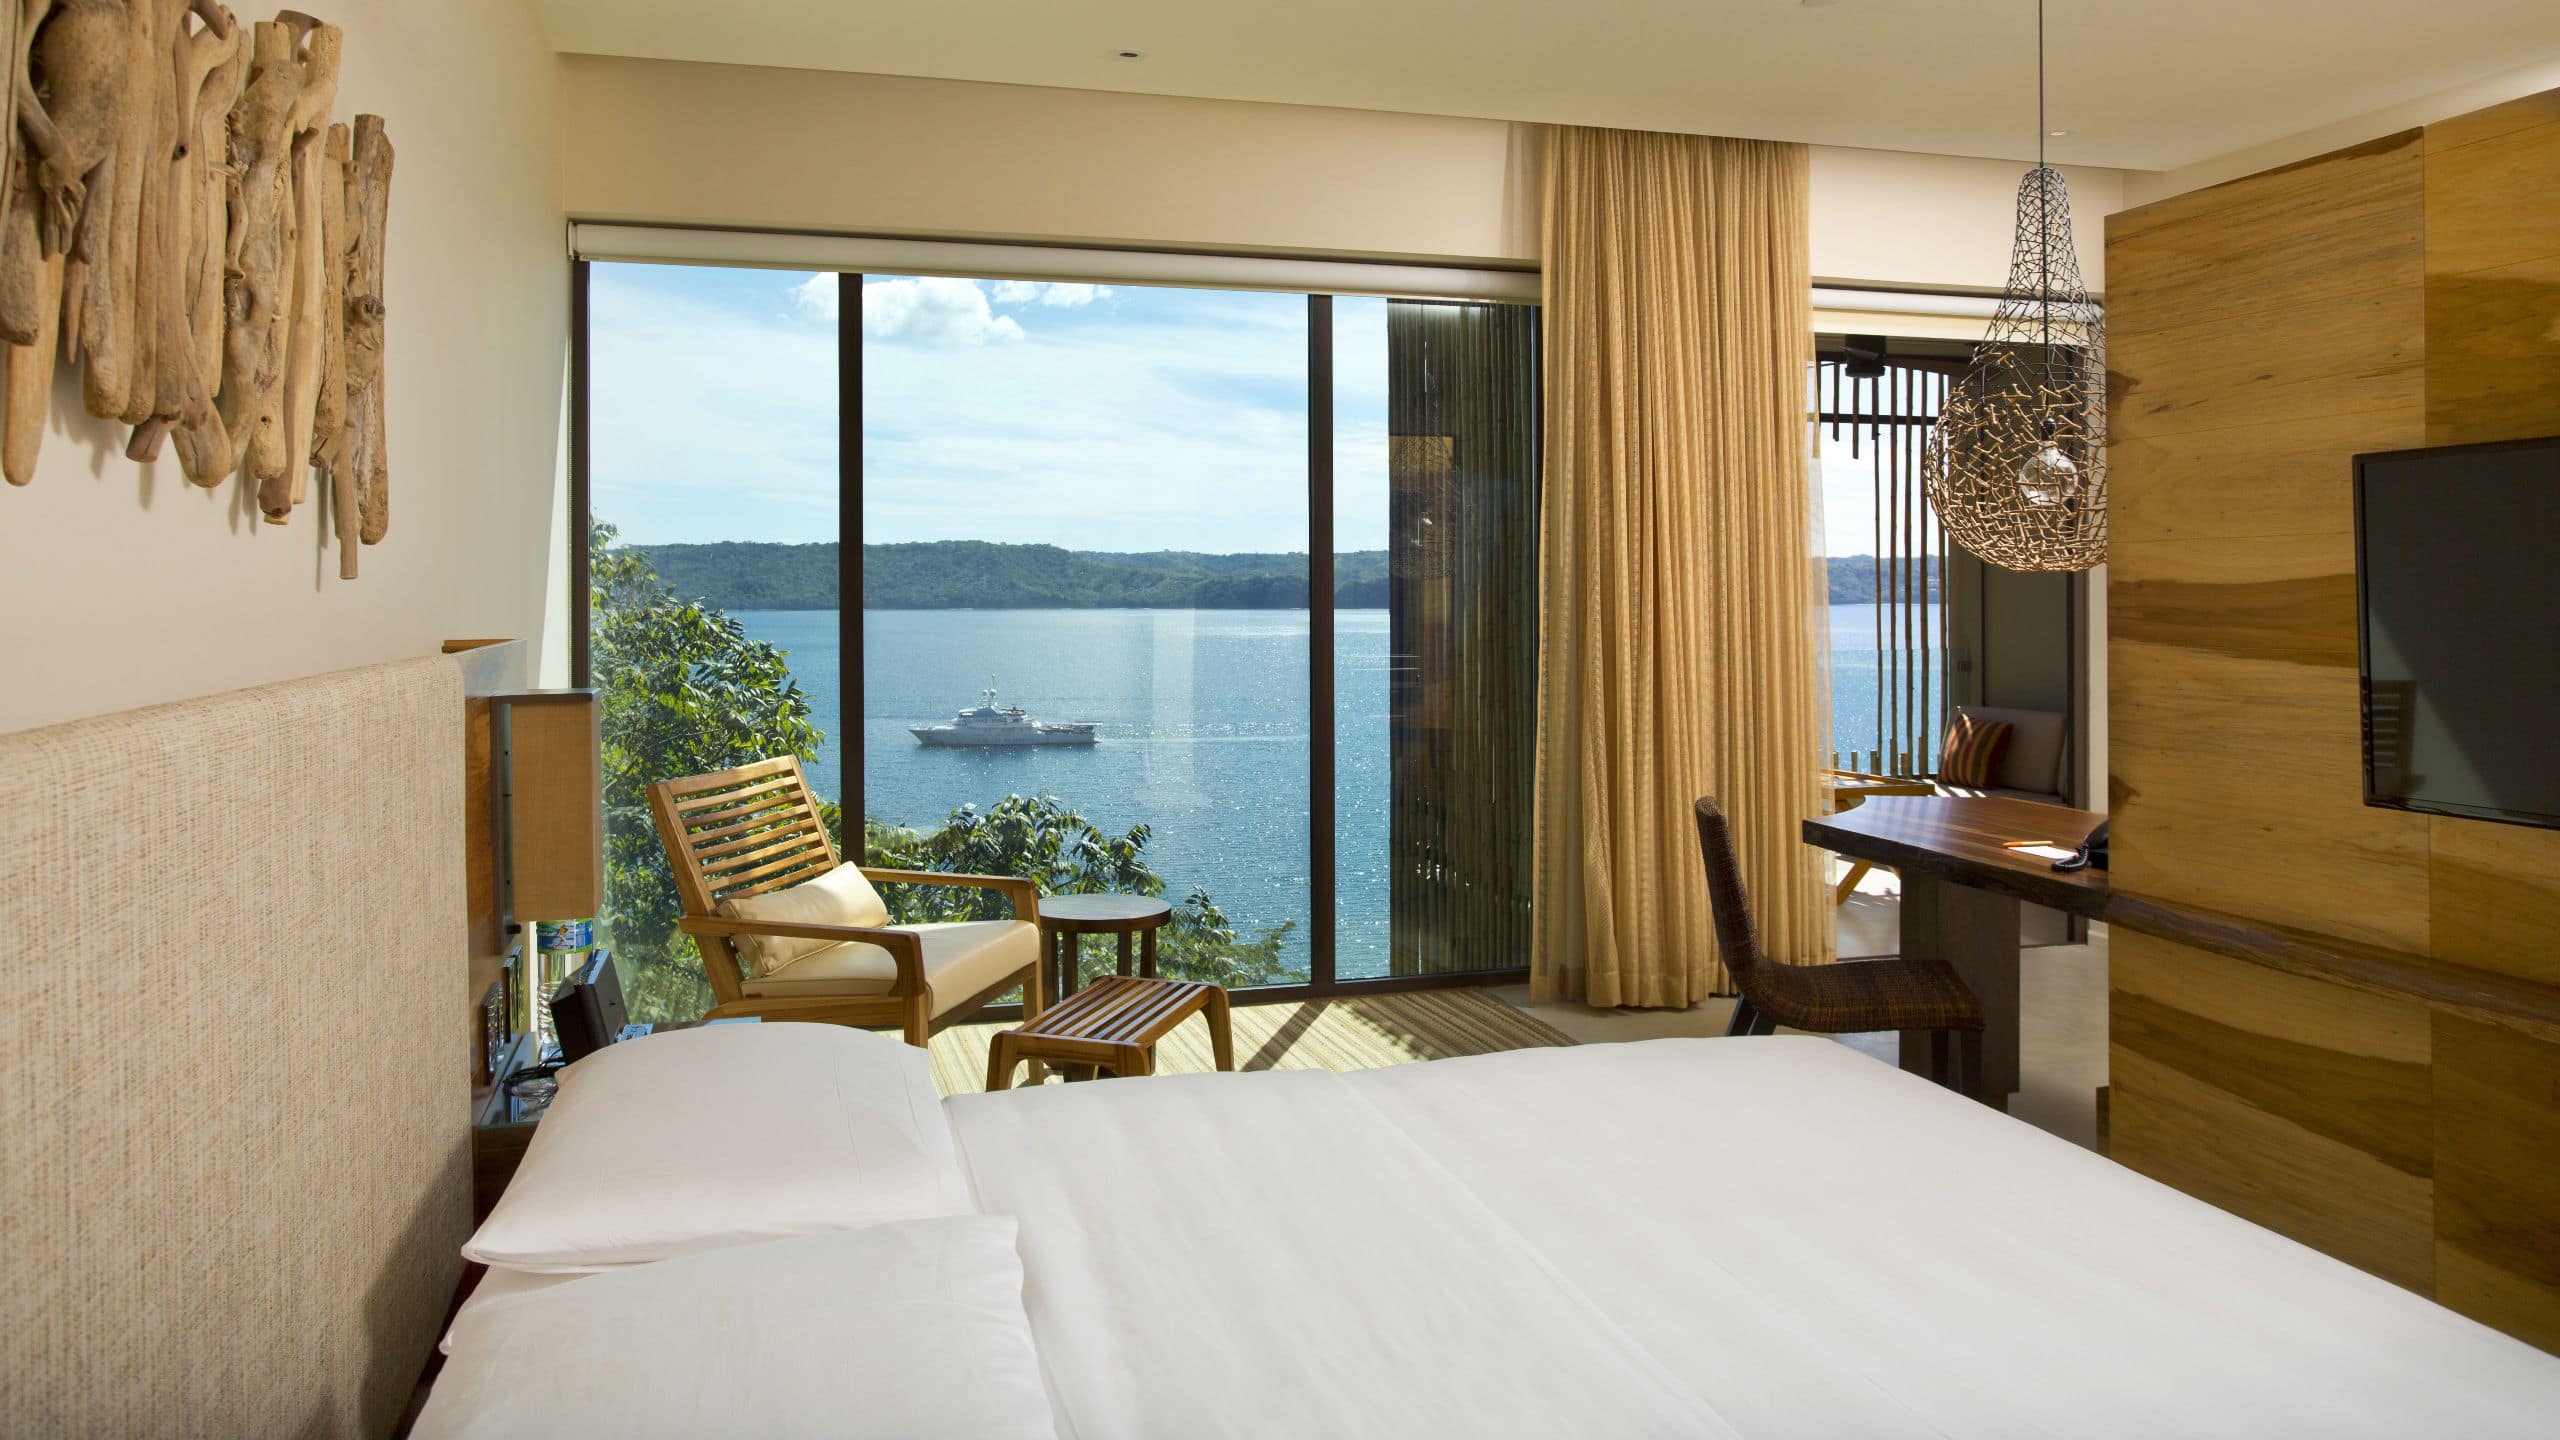 Andaz Costa Rica Resort at Peninsula Papagayo Bay View King